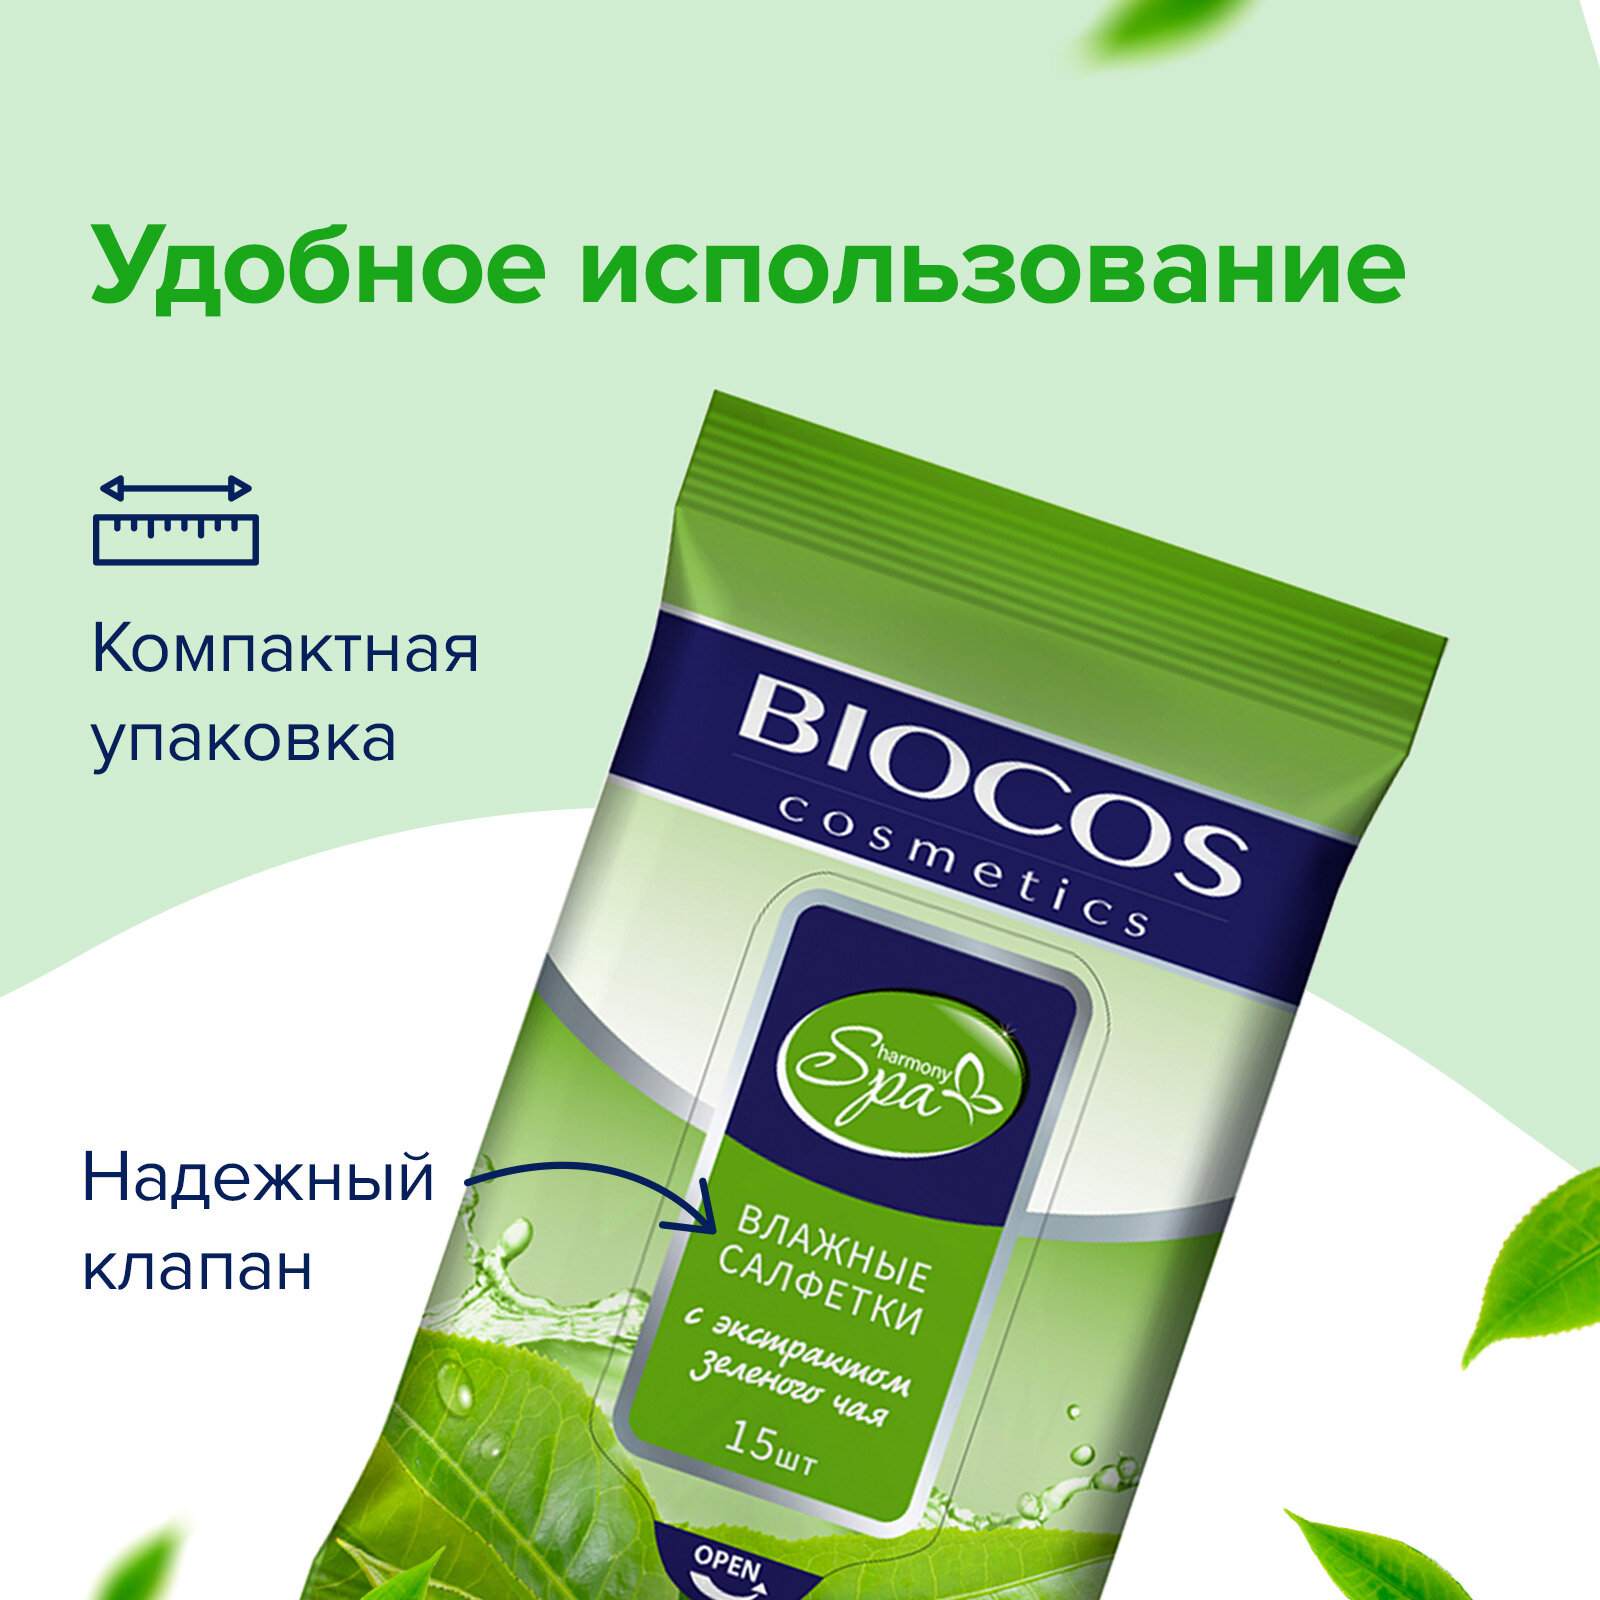 Влажные салфетки Biocos Spa Harmony с экстрактом зеленого чая для гигиены рук и тела, набор 60 штук